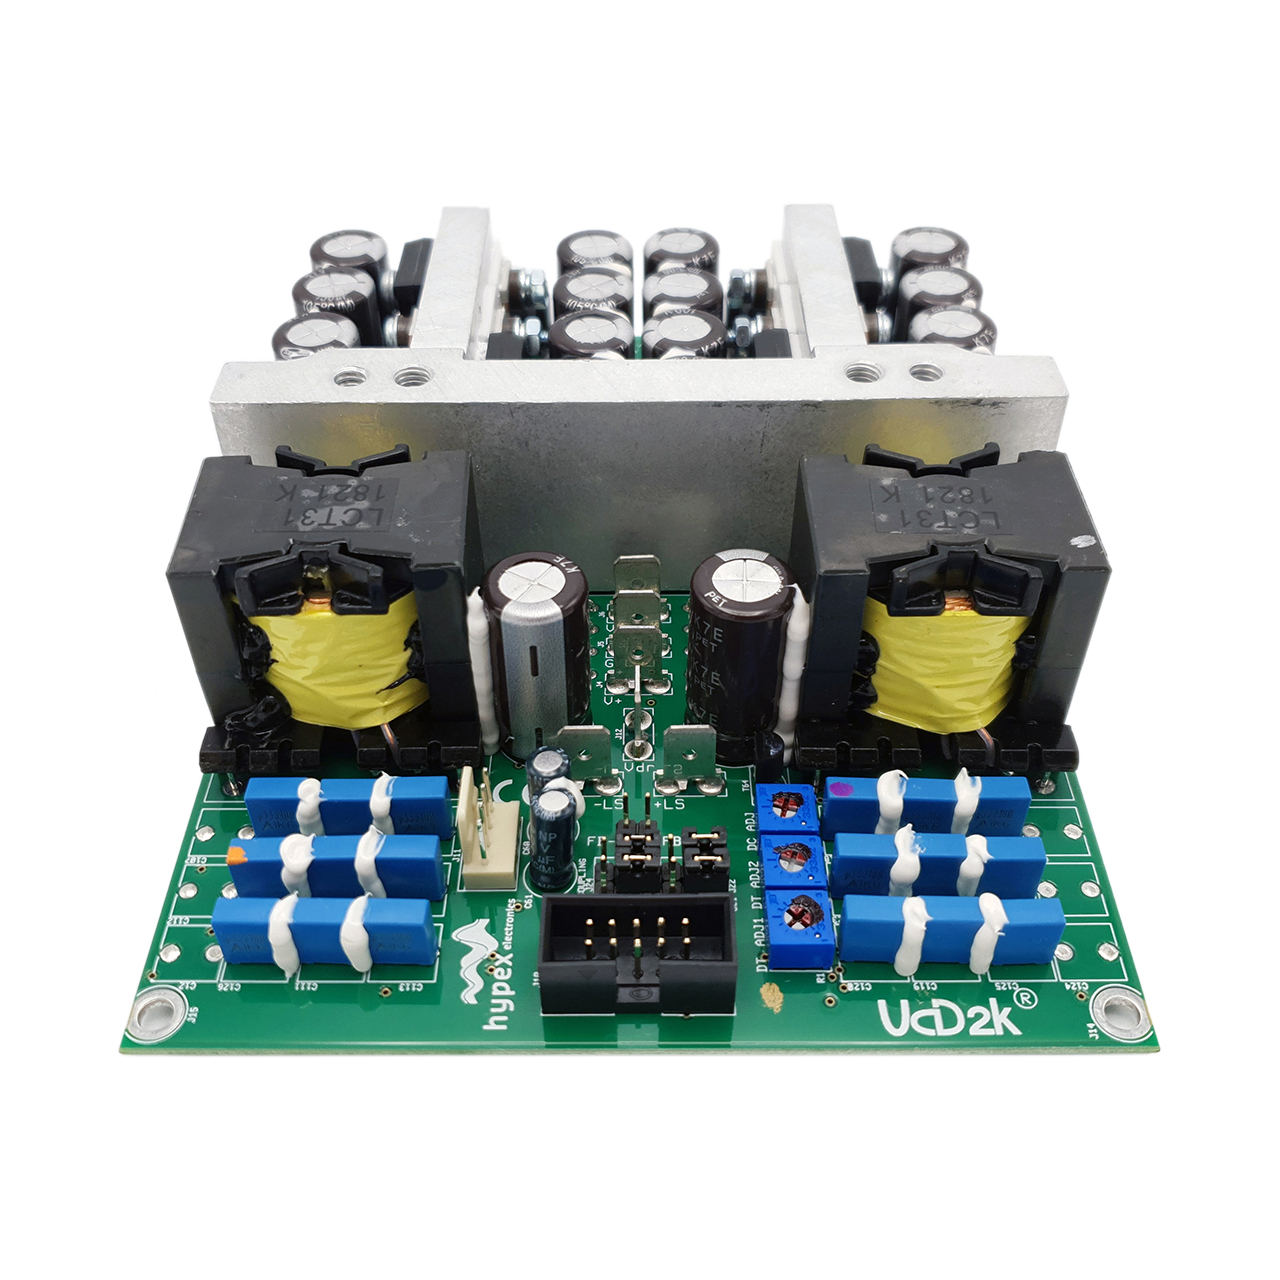 Hypex UcD™ 2k OEM amplifier module